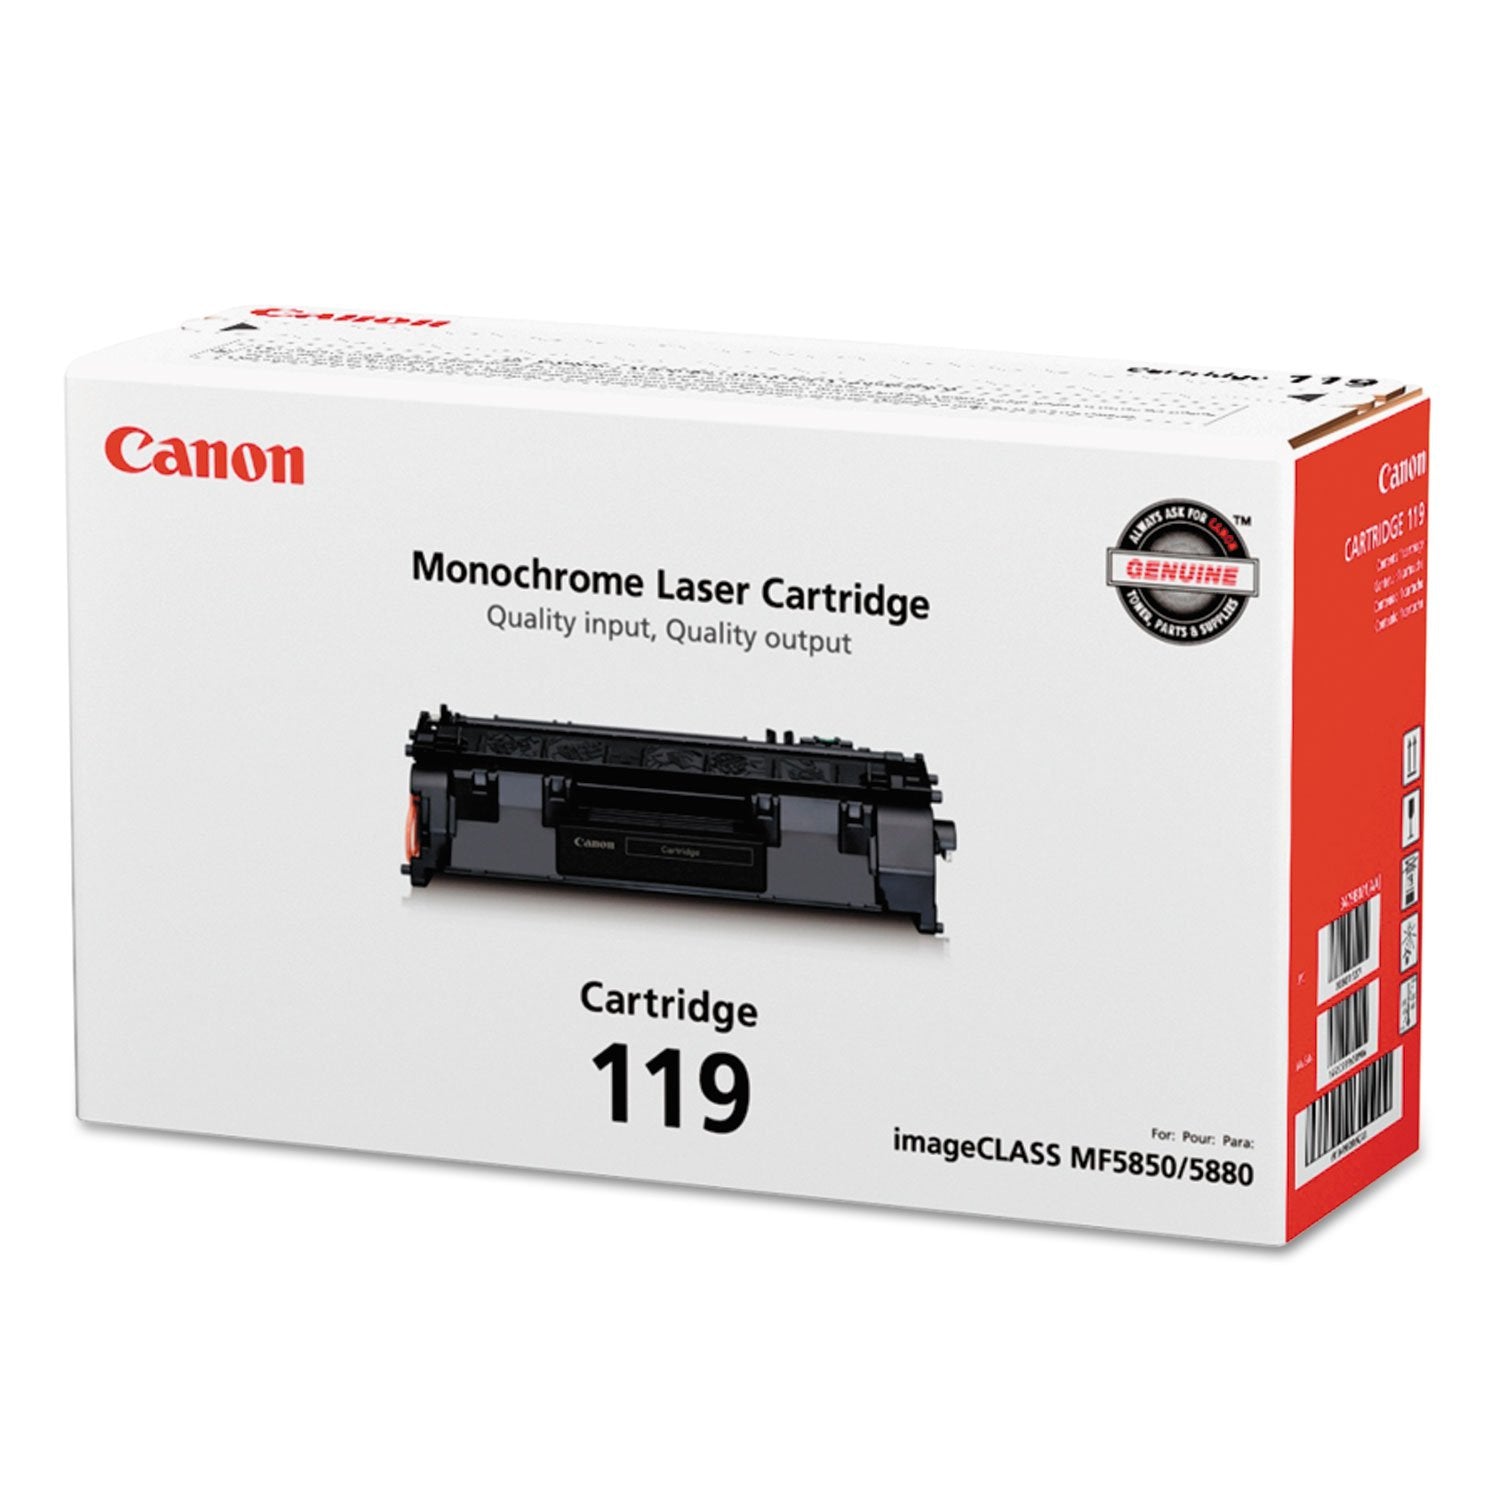 Absolute Toner Canon 119 Black Original Genuine OEM Toner Cartridge | 3479B001 Original Canon Cartridges